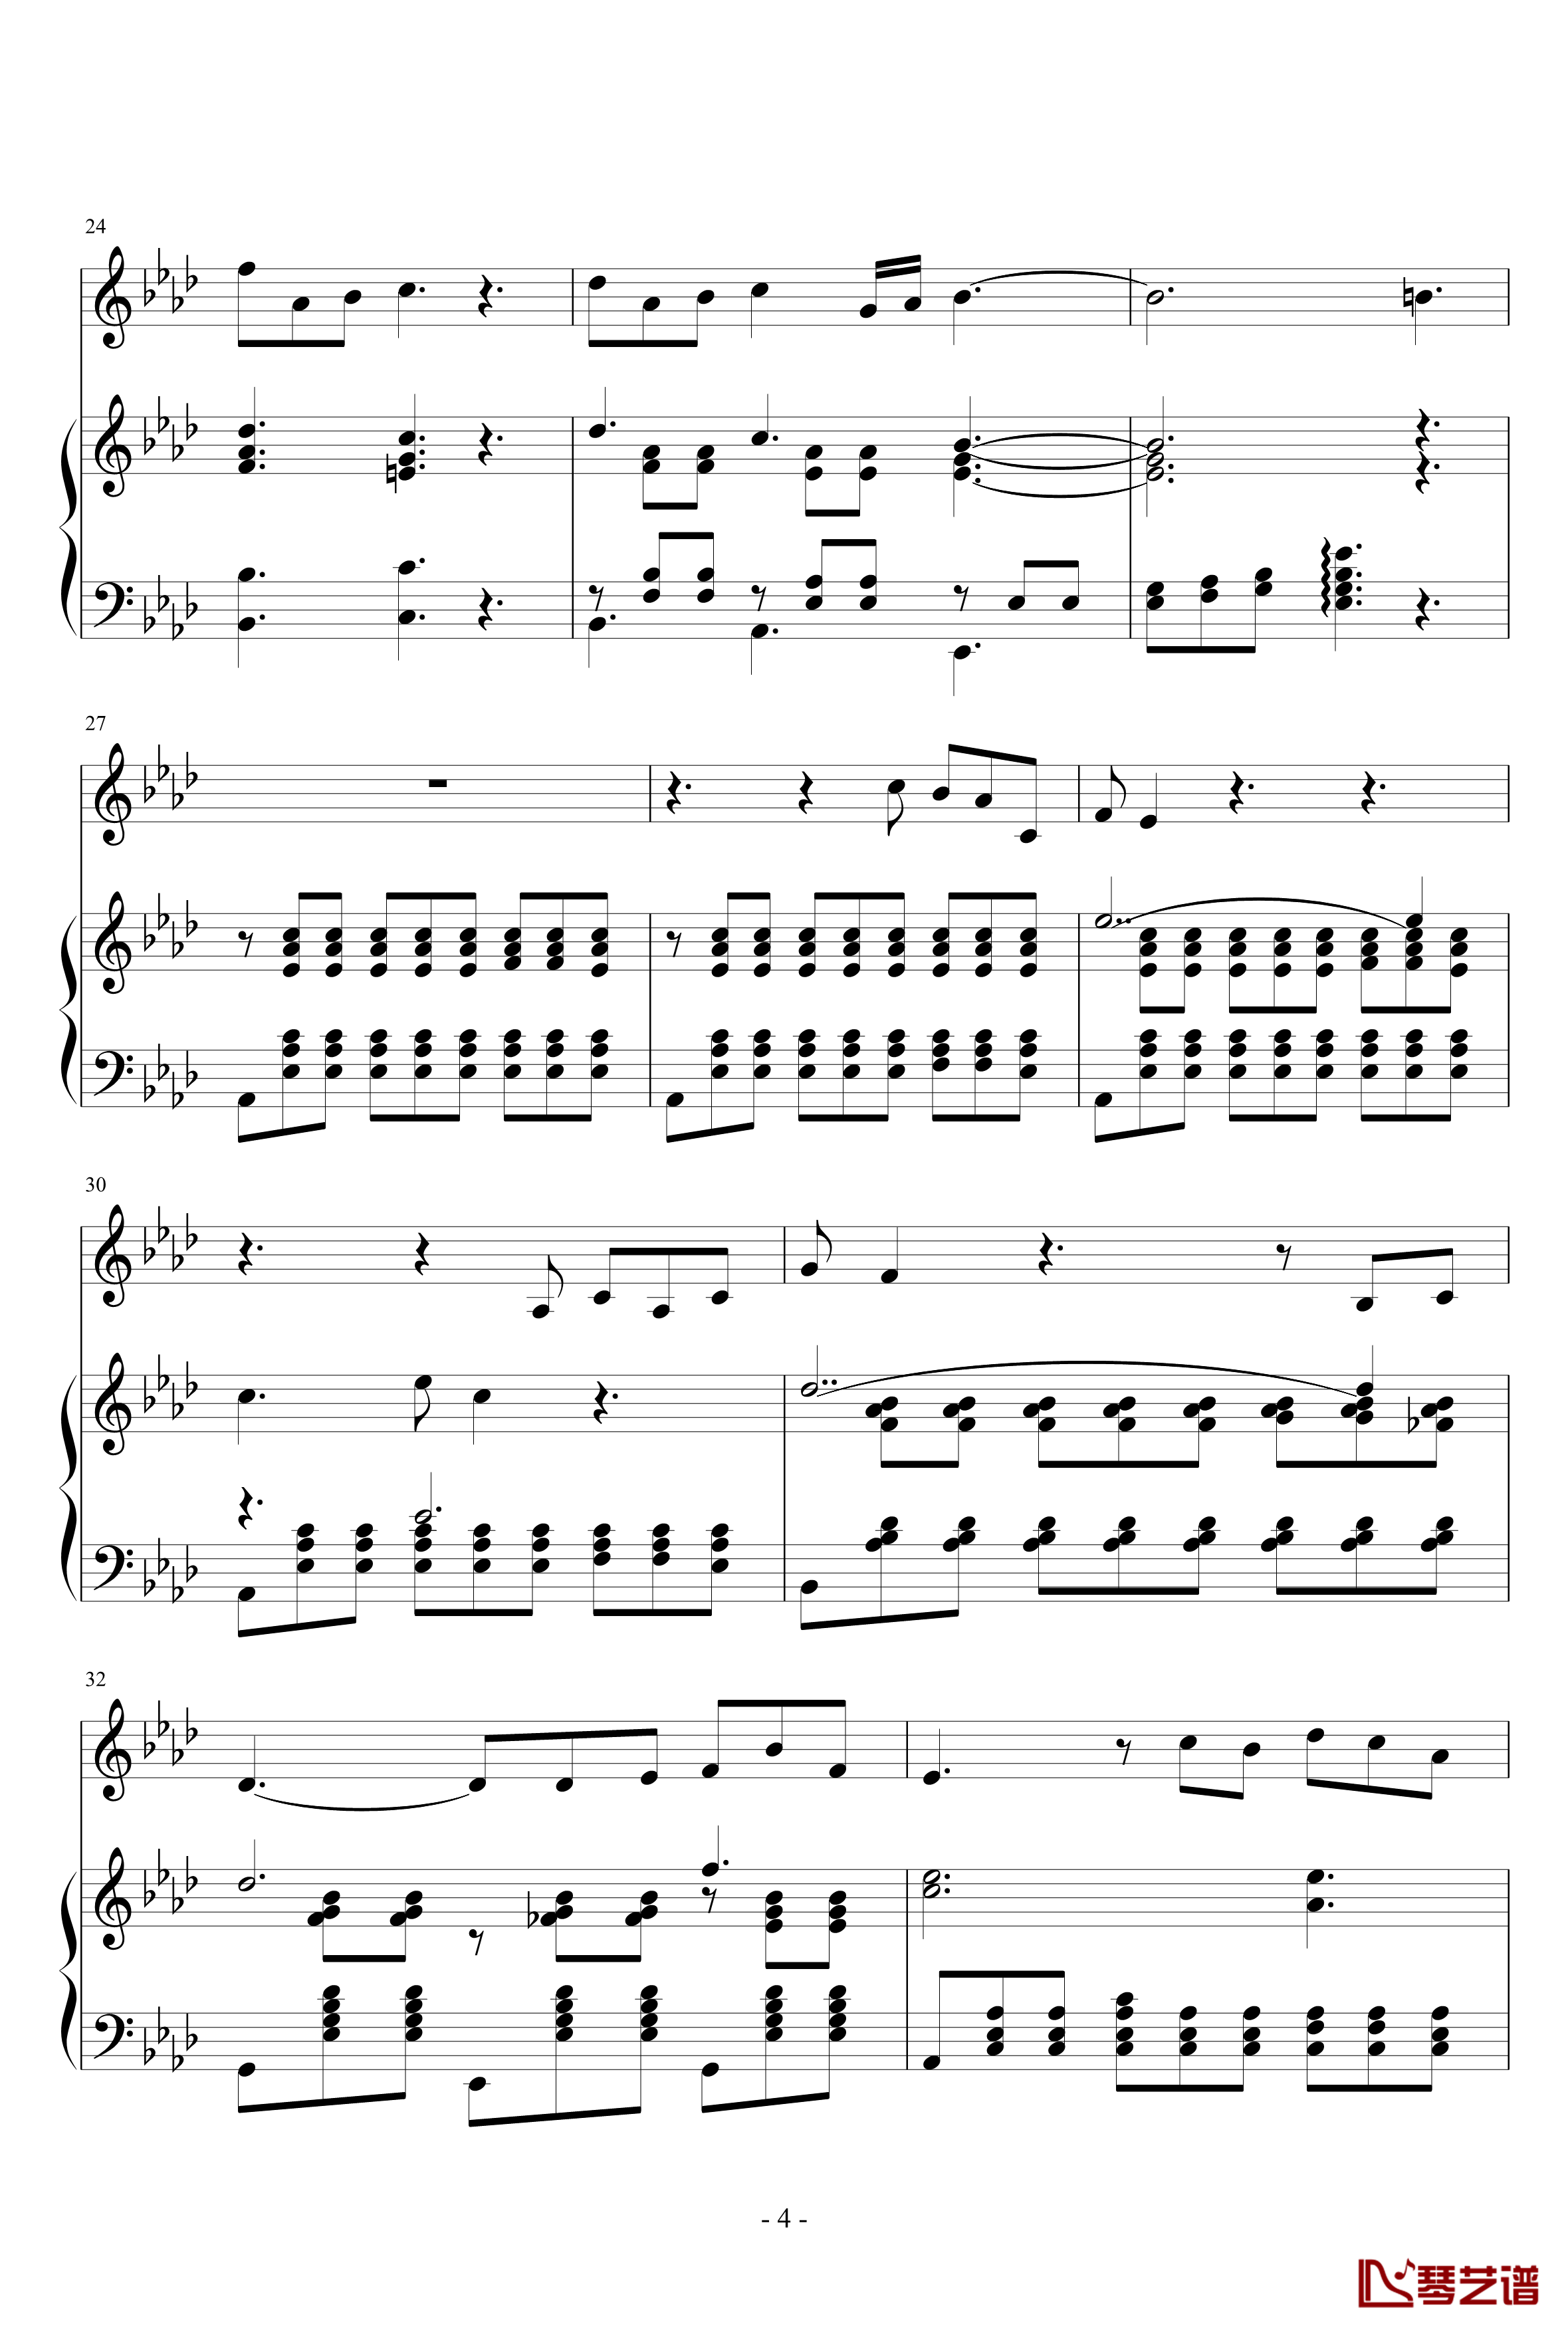 Art Song for winter钢琴谱-nzh19344